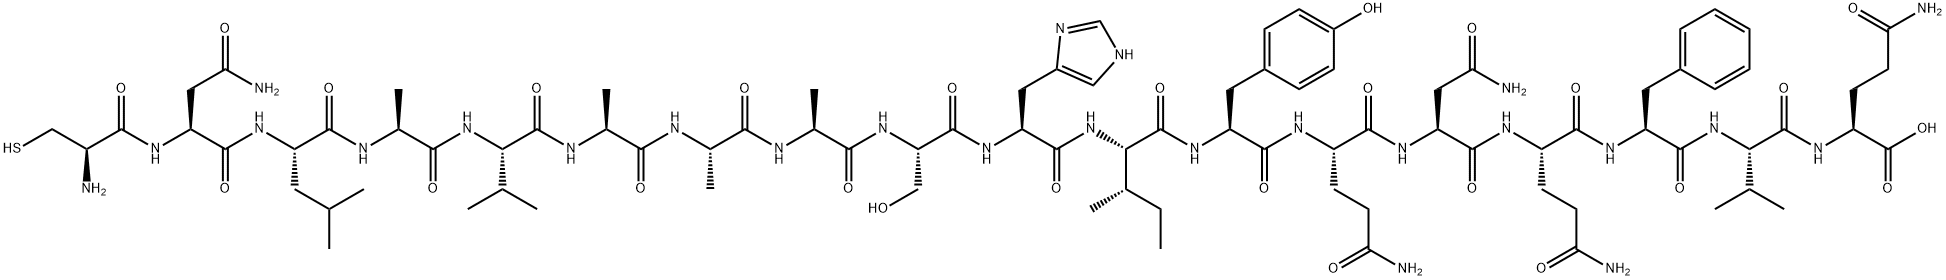 Cys-CD36 (139-155) trifluoroacetate salt H-Cys-Asn-Leu-Ala-Val-Ala-Ala-Ala-Ser-His-Ile-Tyr-Gln-Asn-Gln-Phe-Val-Gln-OH trifluoroacetate salt Struktur